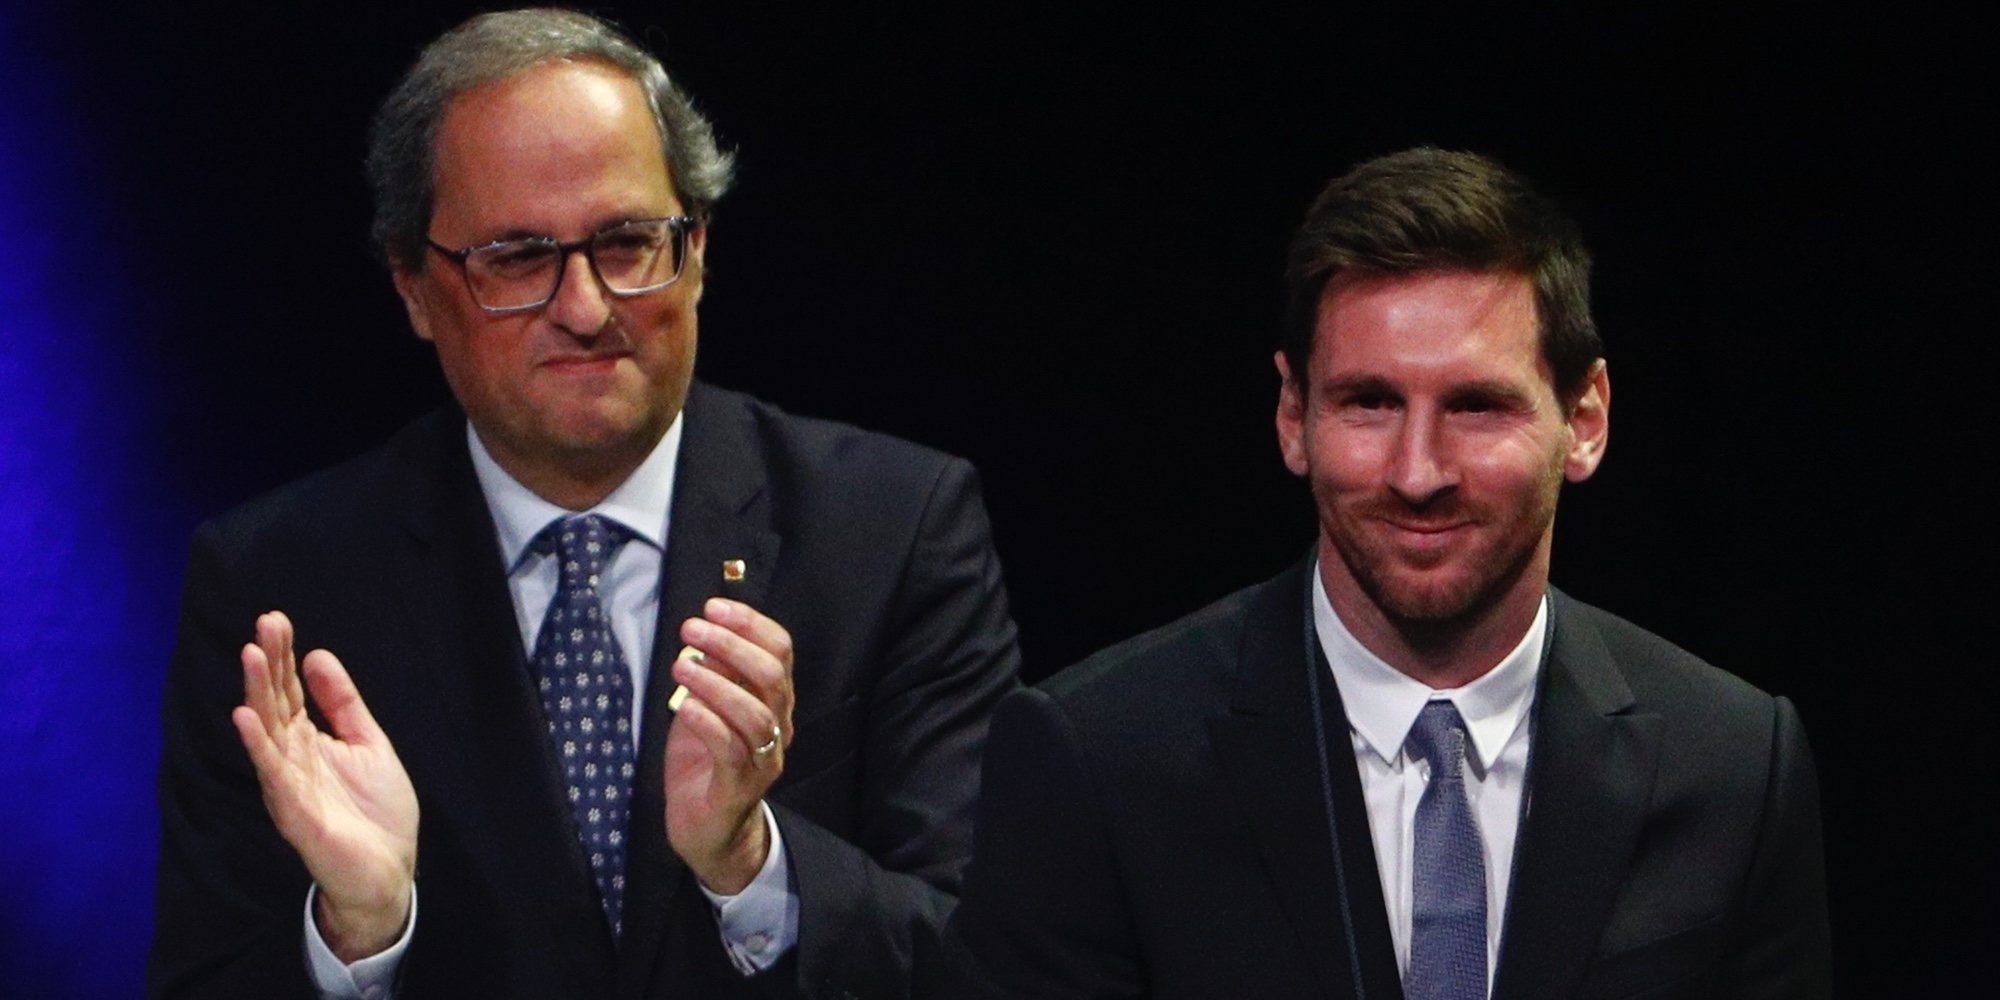 Leo Messi deja claro que no apoya el Independentismo catalán tras ser galardonado con la Cruz de Sant Jordi